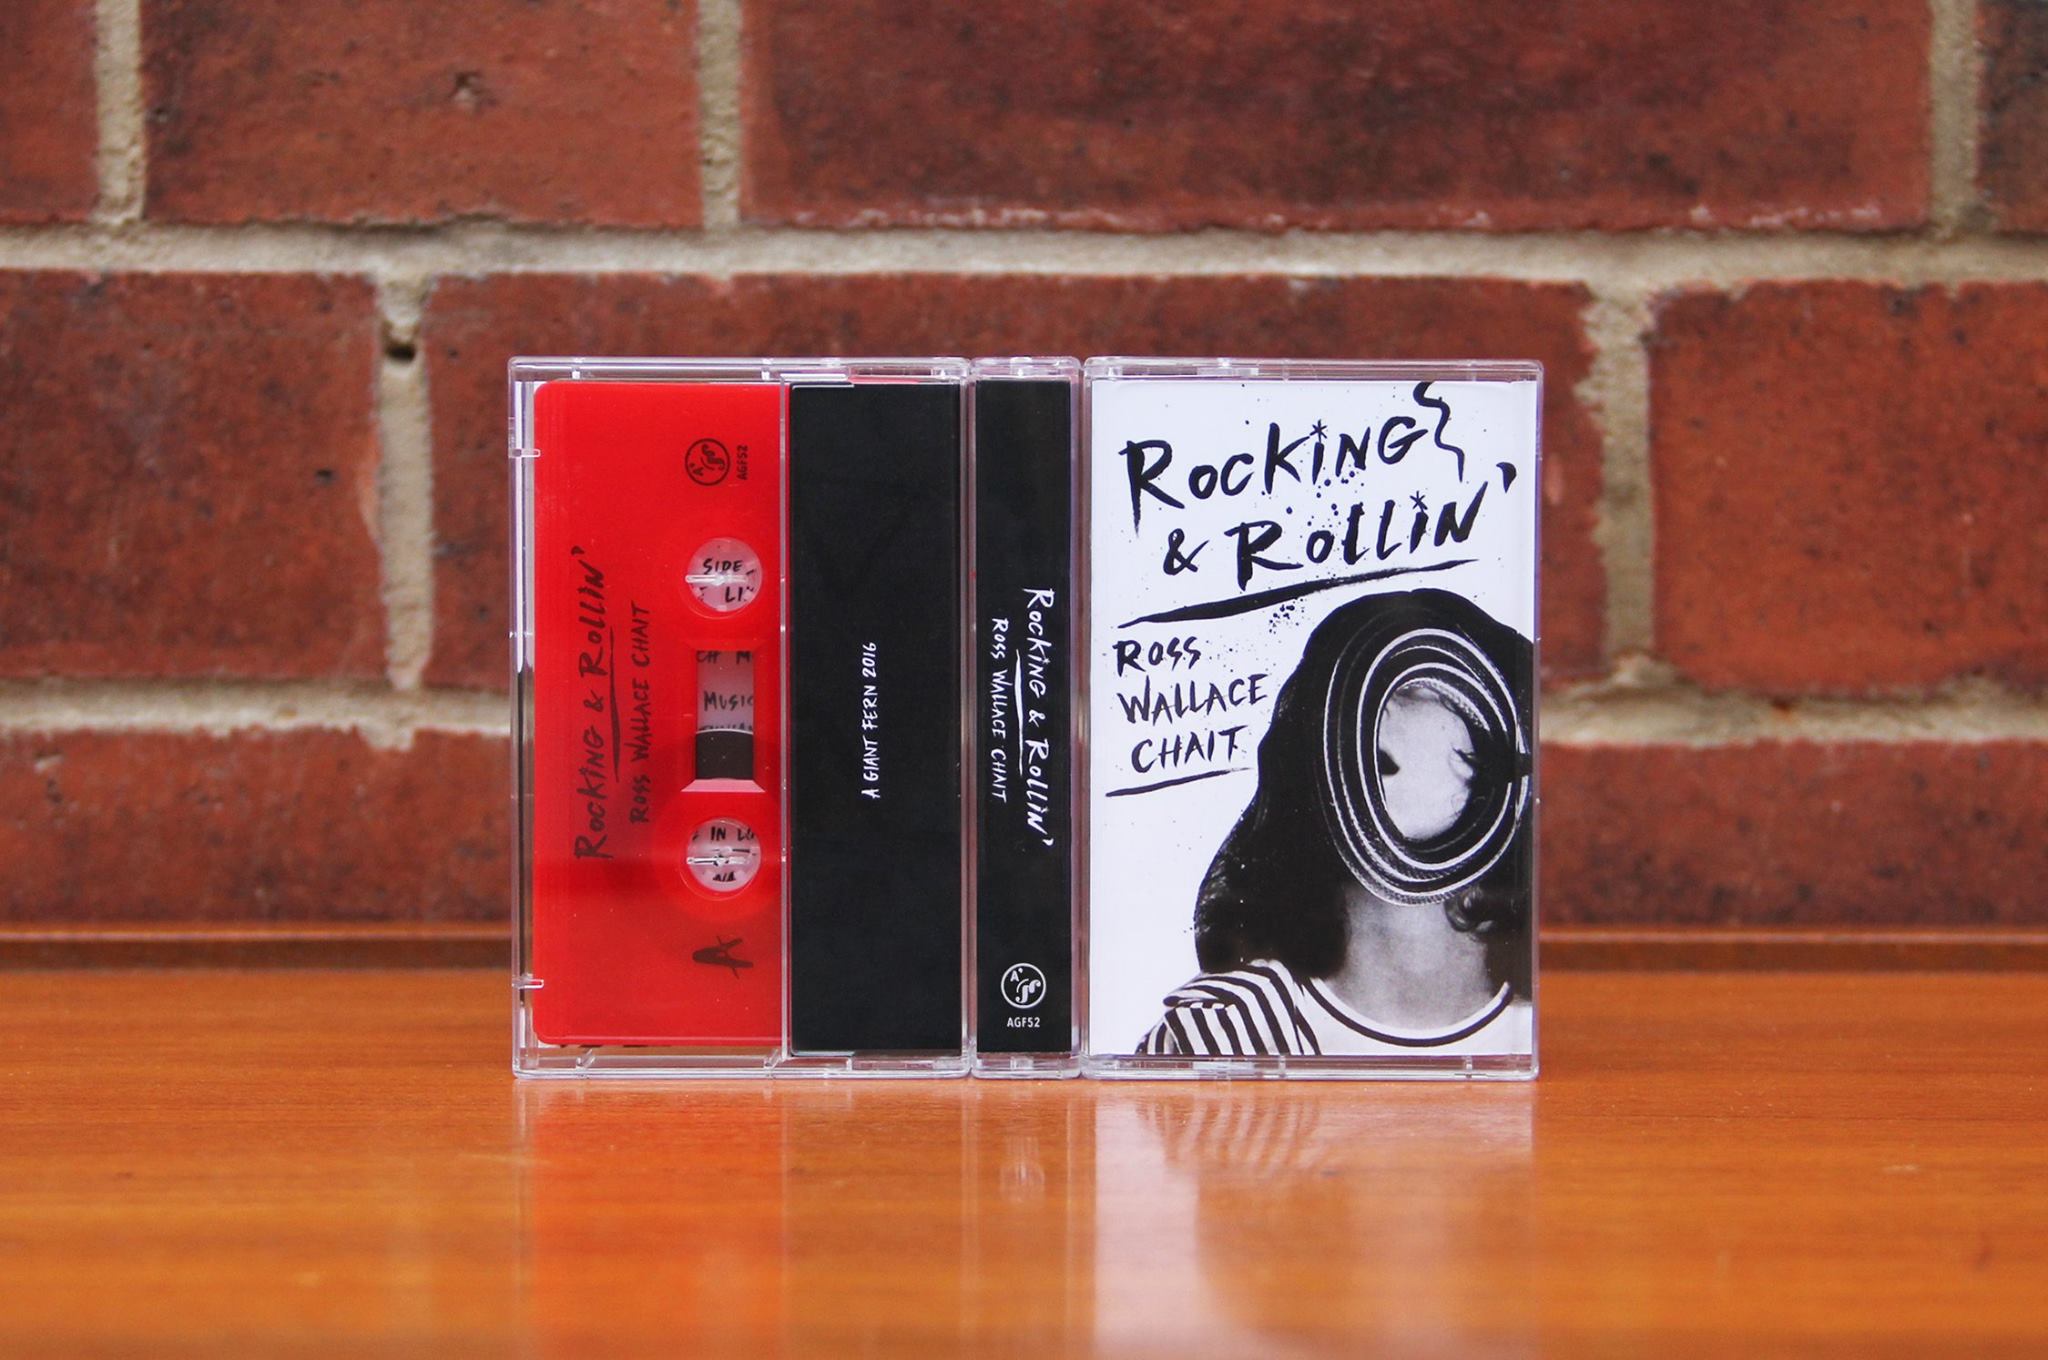 Ross Wallace Chait – Rocking & Rollin